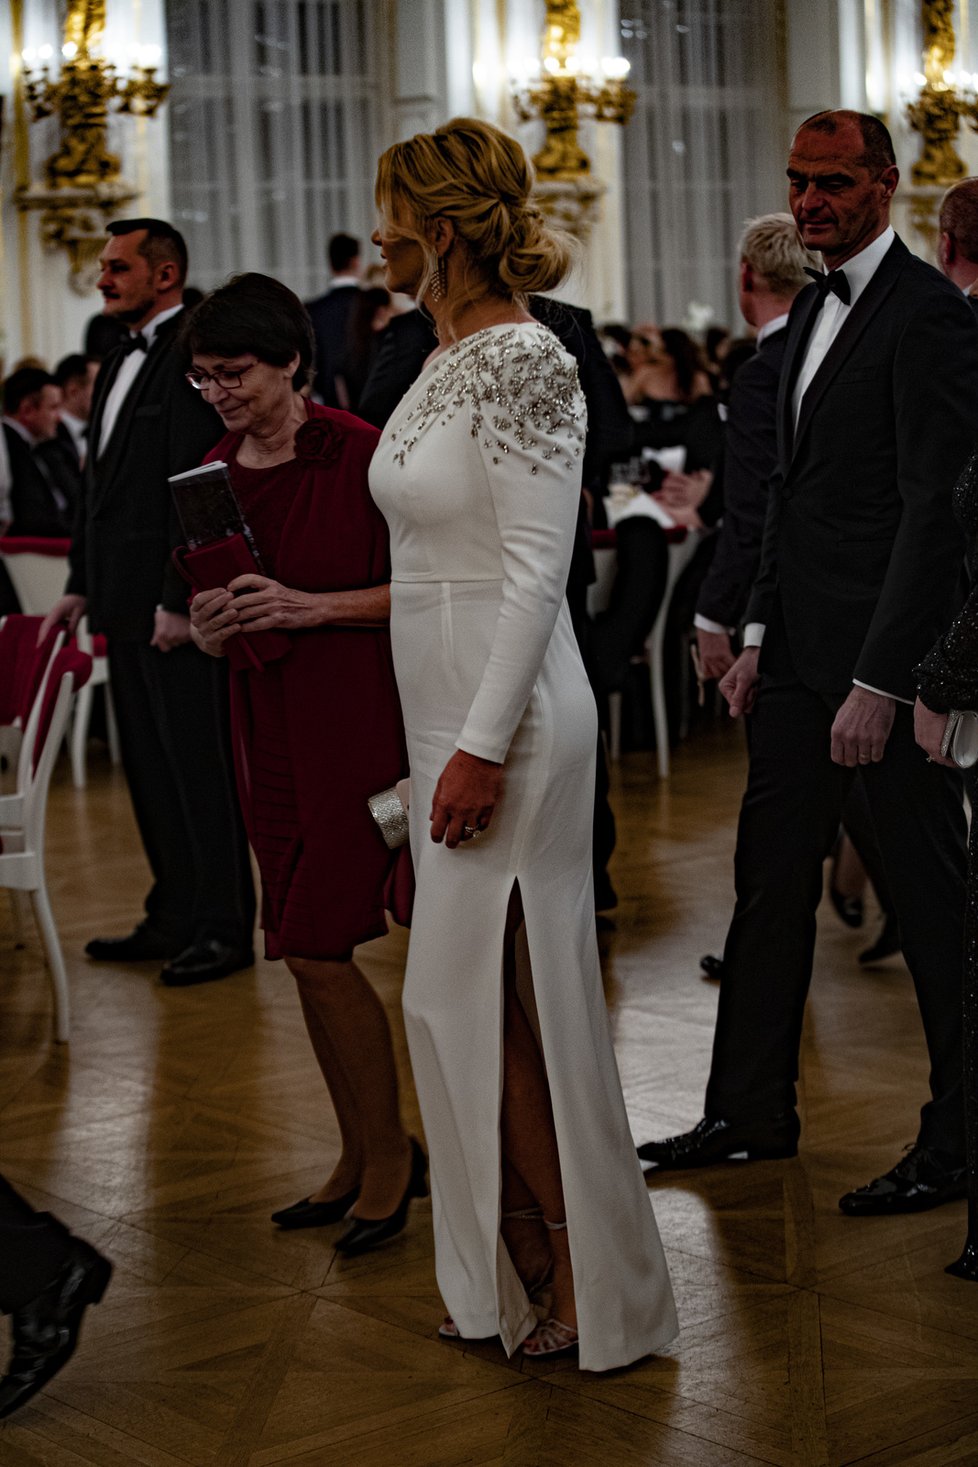 Ples na Hradě: Žena premiéra Monika Babišová v odvážných šatech (10.1.2020)